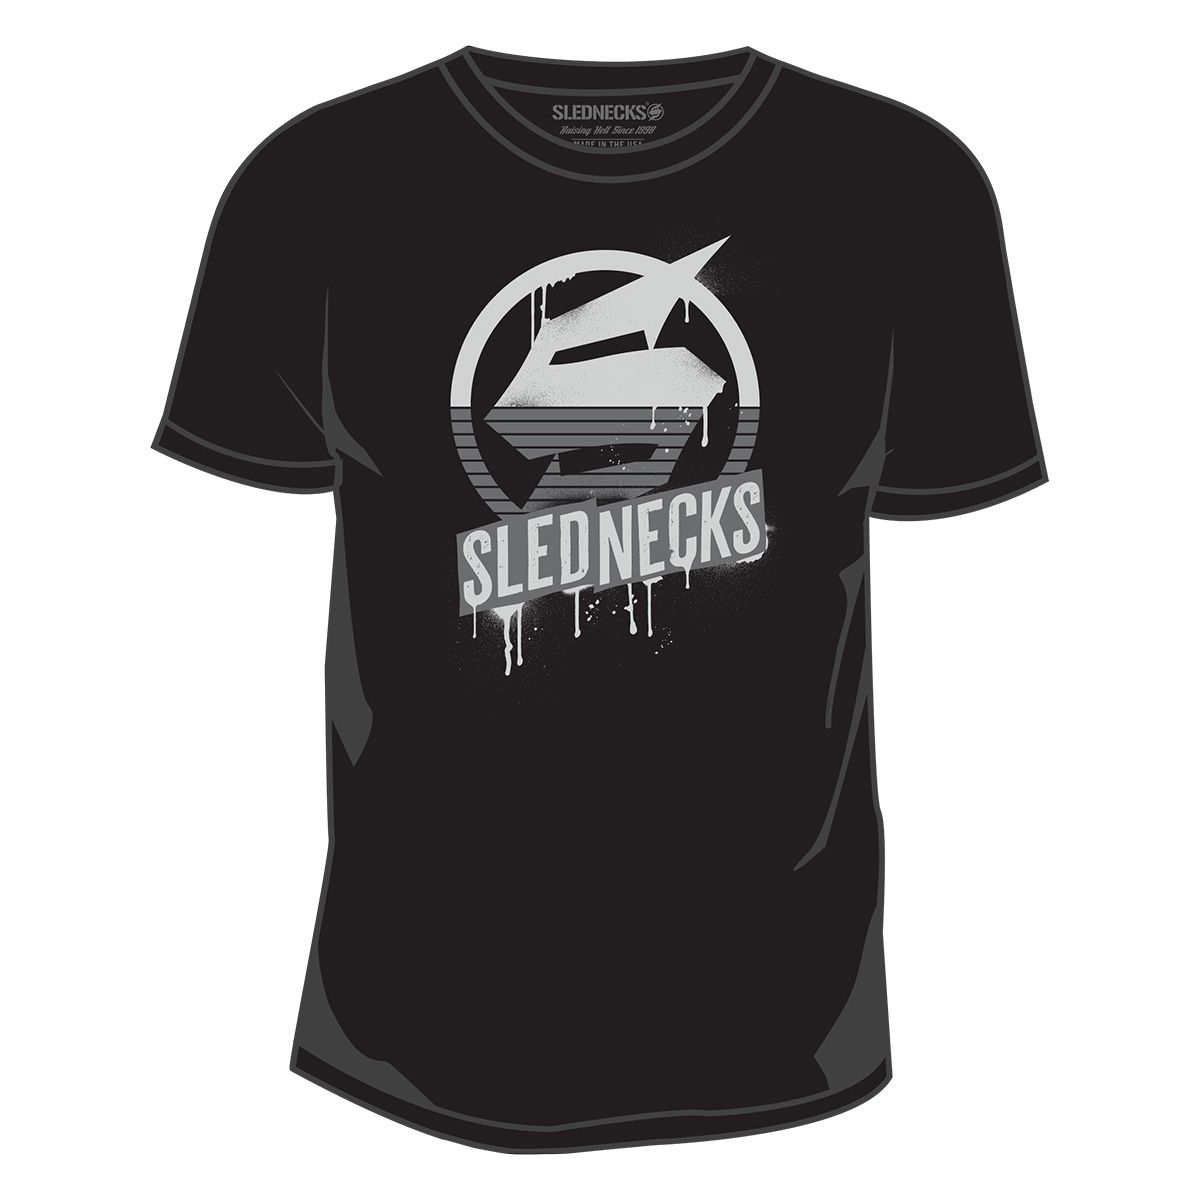 slednecks t-shirt shirts for men homeland